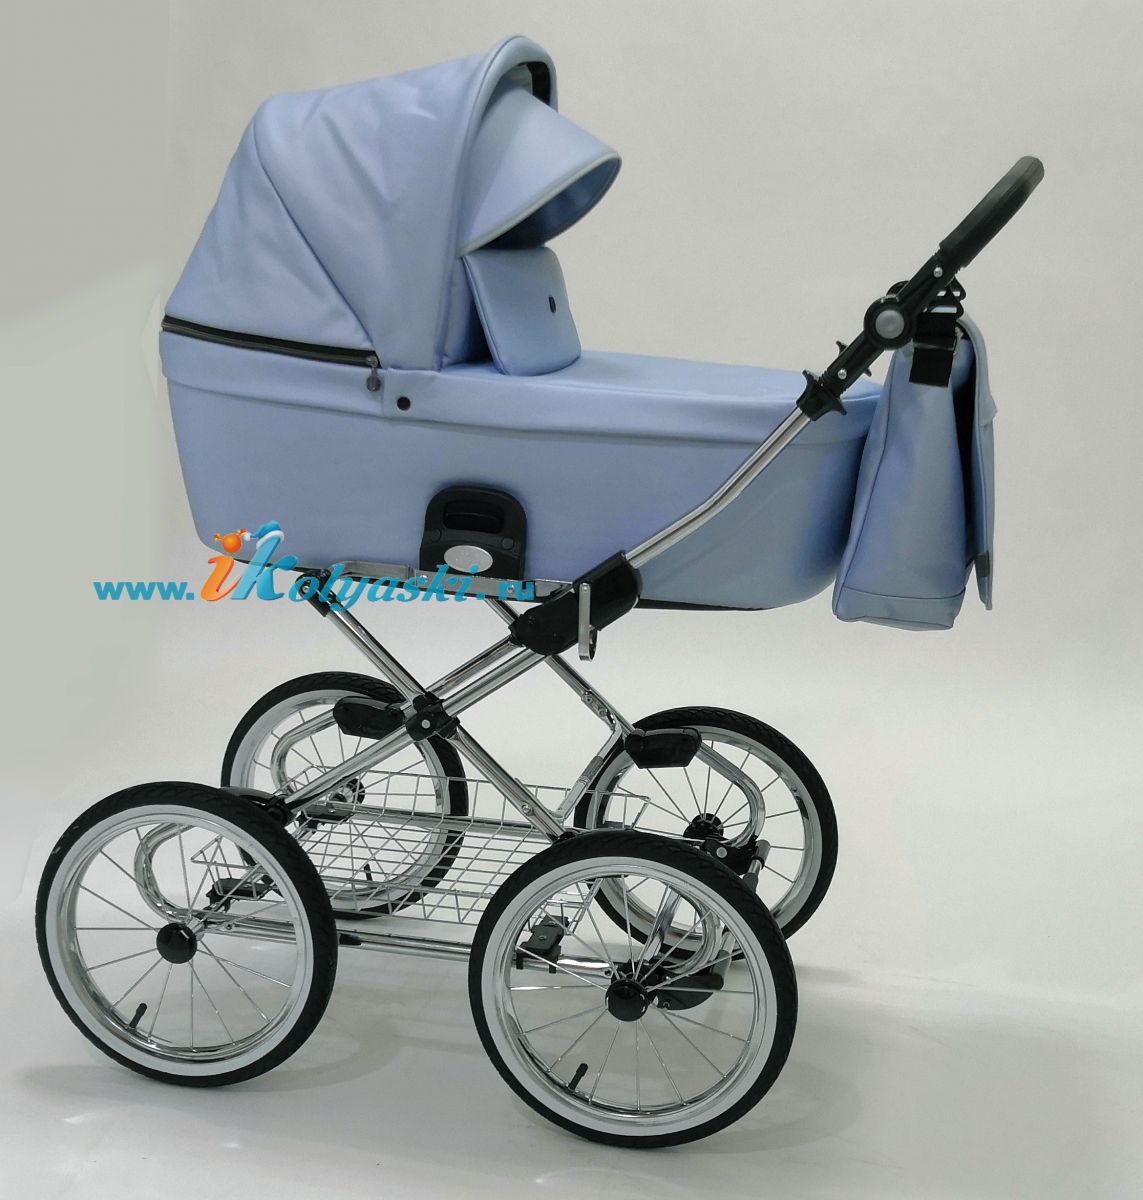  Roan Coss Classic коляска для новорожденных 2 в 1 на больших колесах и классической крашенной раме новые цвета 2022